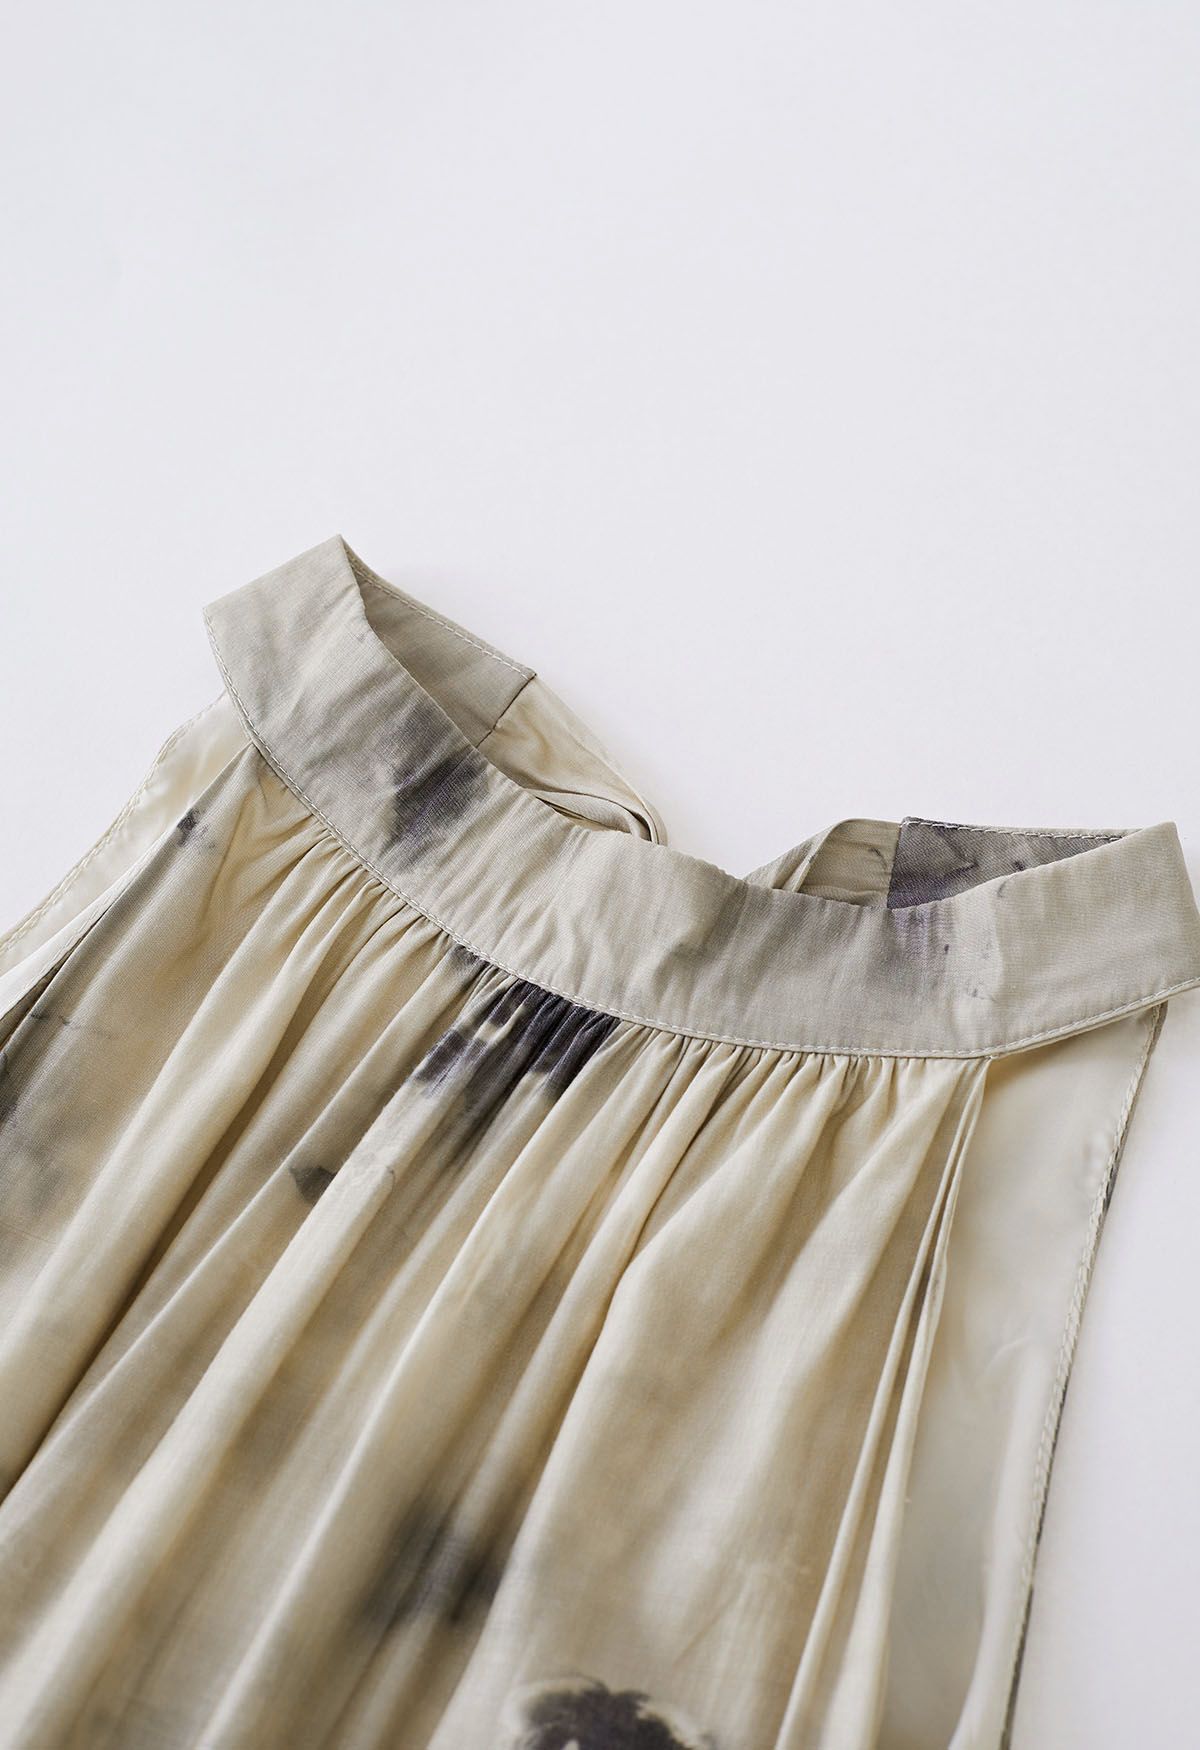 Glattes Neckholder-Kleid mit Tuschemalerei